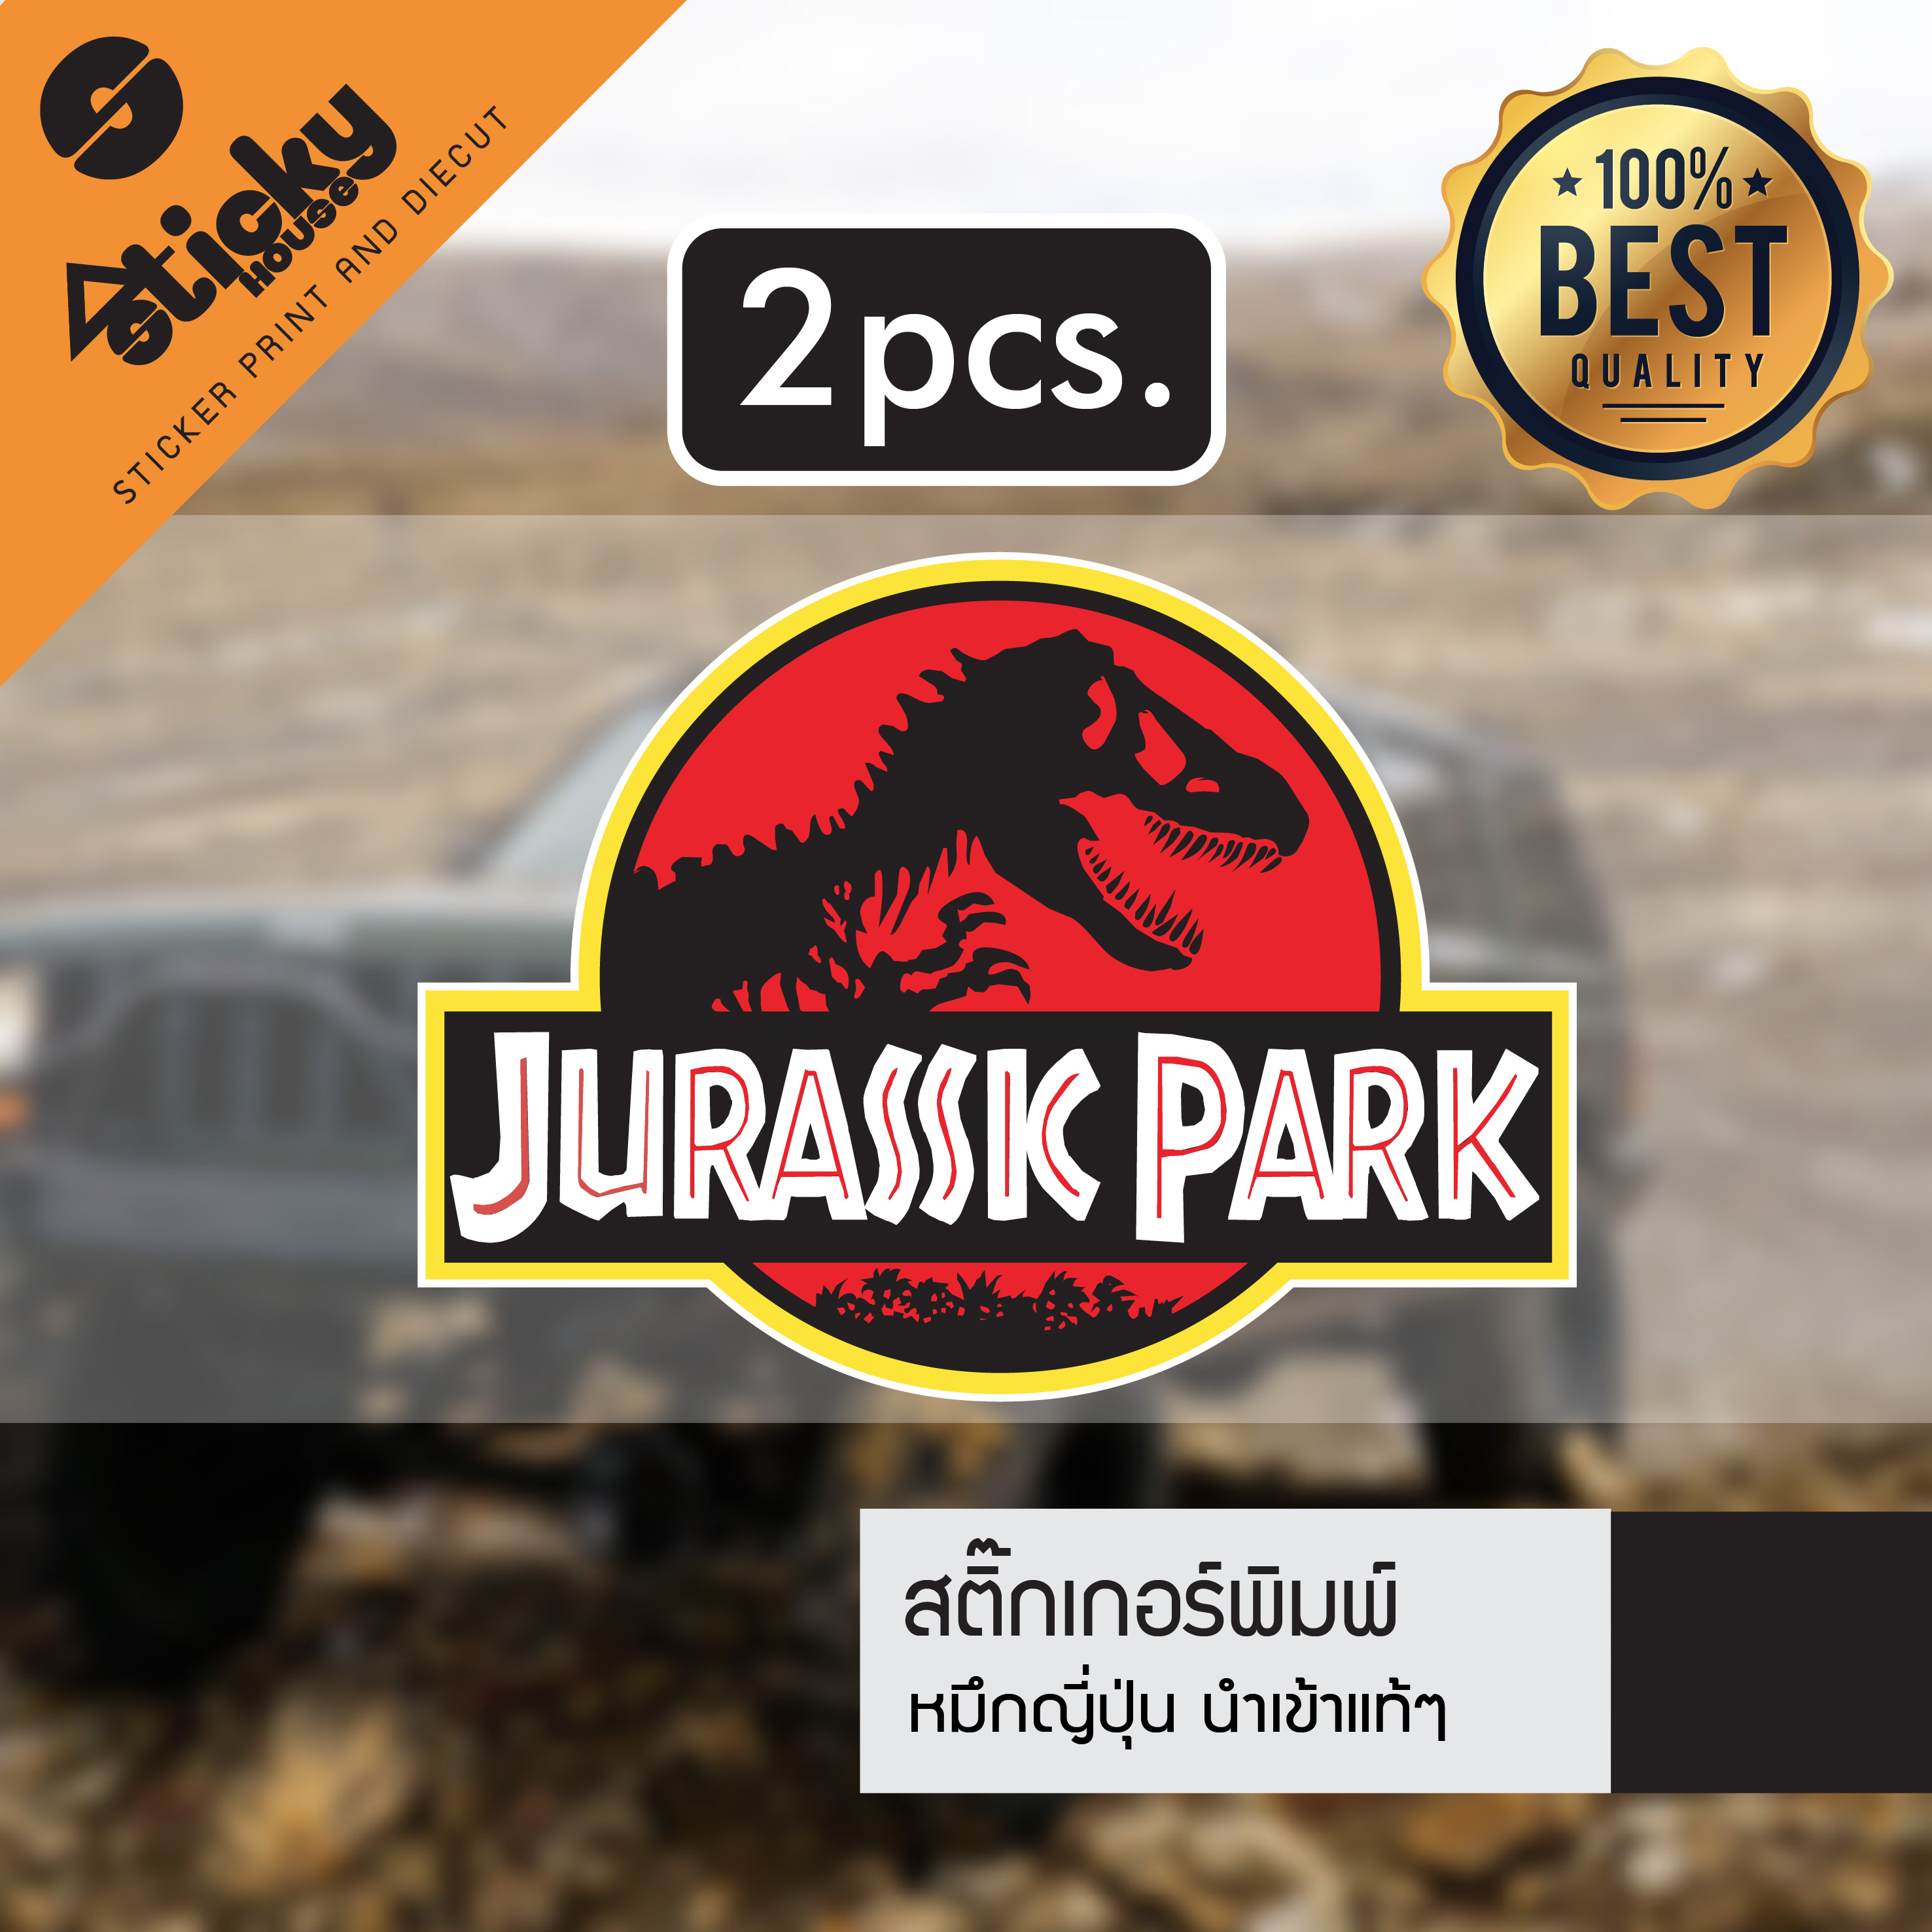 ขายเป็นคู่ sticker สติ๊กเกอร์ลาย Jurassic Park ติดได้ทุกที่มี2ขนาด